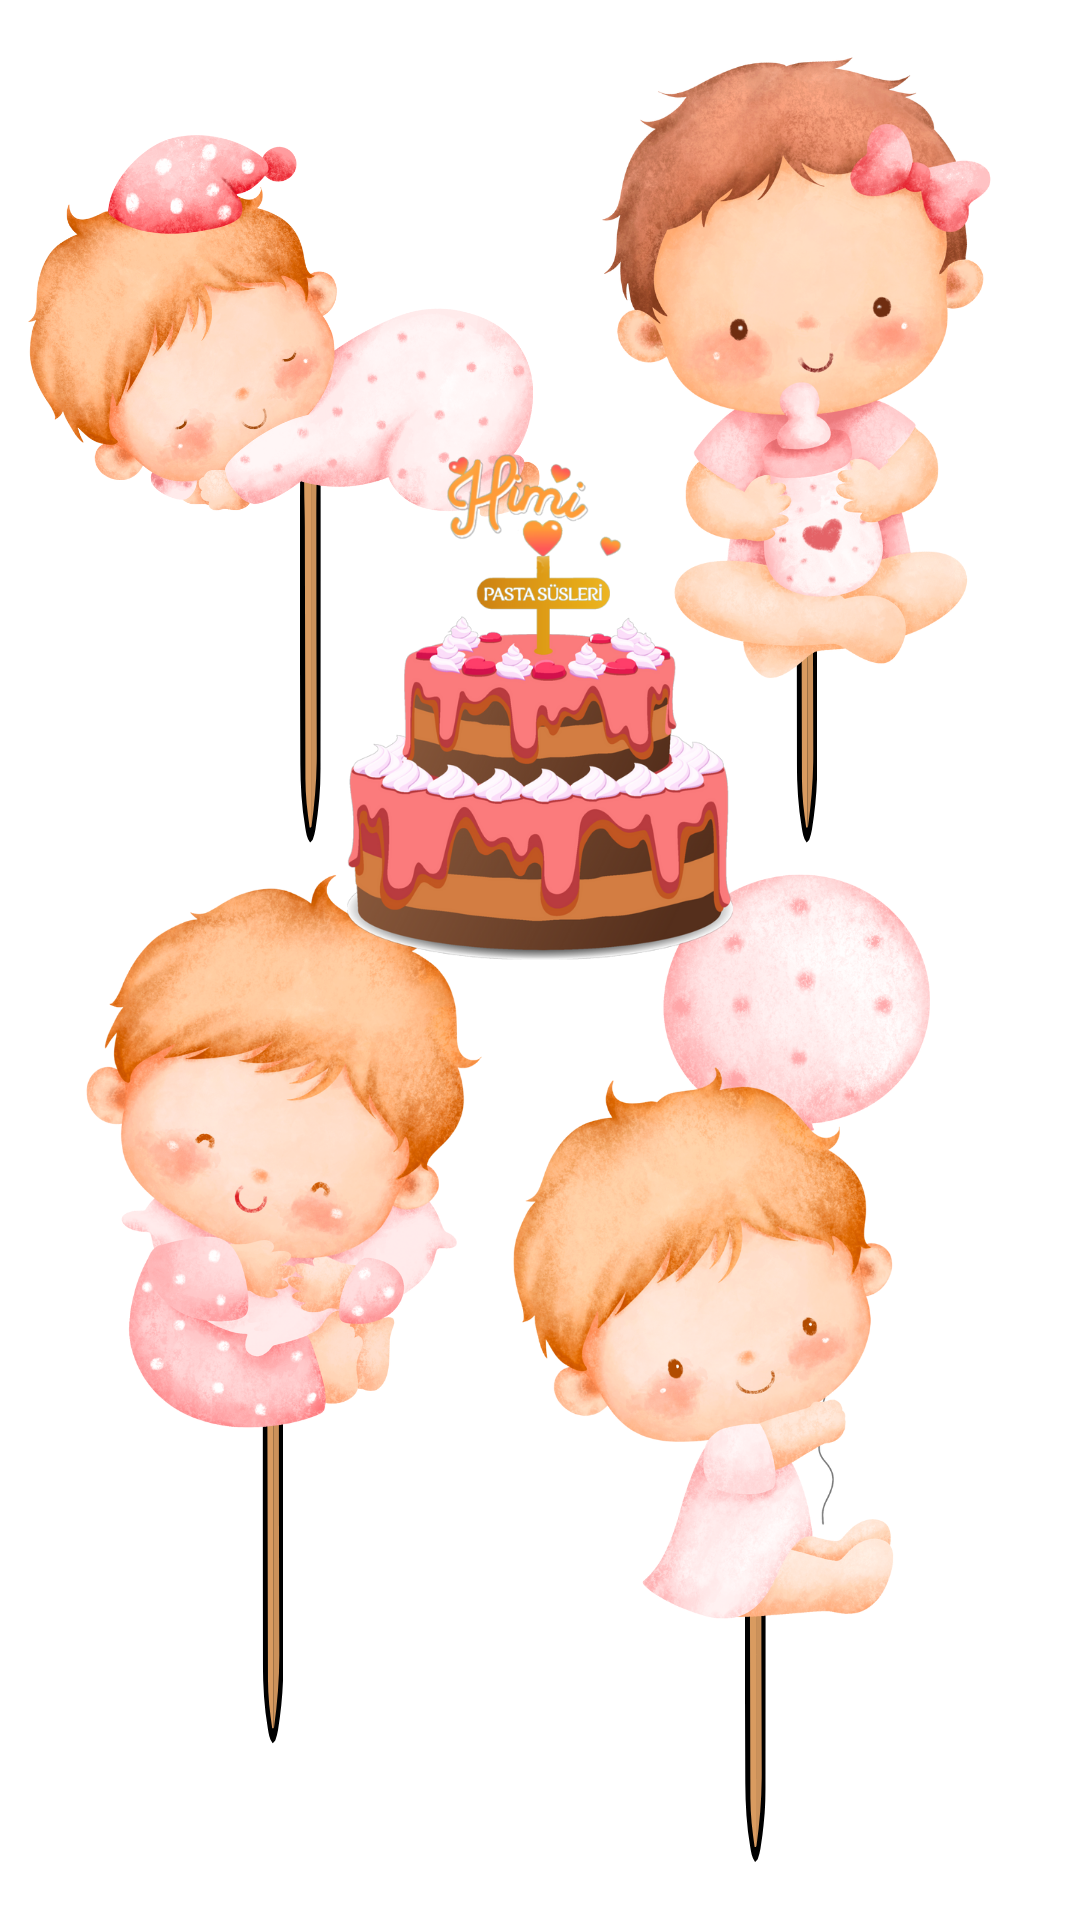 İlk Yaş Doğum Günü Pasta Süsleri Kız Erkek Çocuk Maket Pasta Kürdanı Cupcake Kürdan Süsleri M42